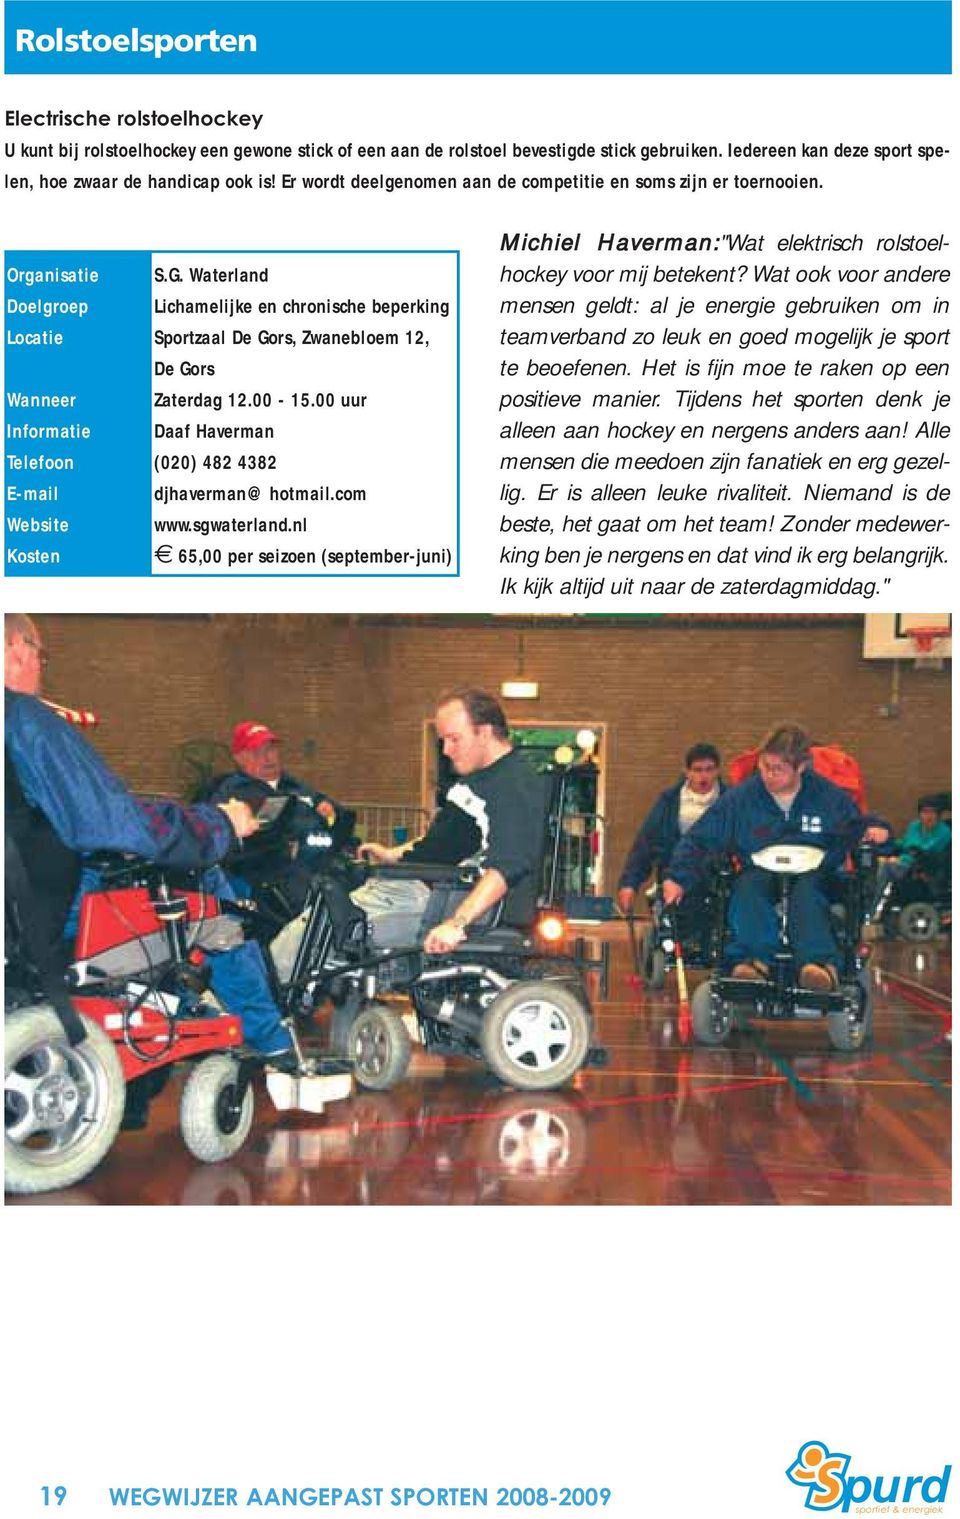 00 uur Daaf Haverman (020) 482 4382 djhaverman@hotmail.com www.sgwaterland.nl 65,00 per seizoen (september-juni) Michiel Haverman:"Wat elektrisch rolstoelhockey voor mij betekent?